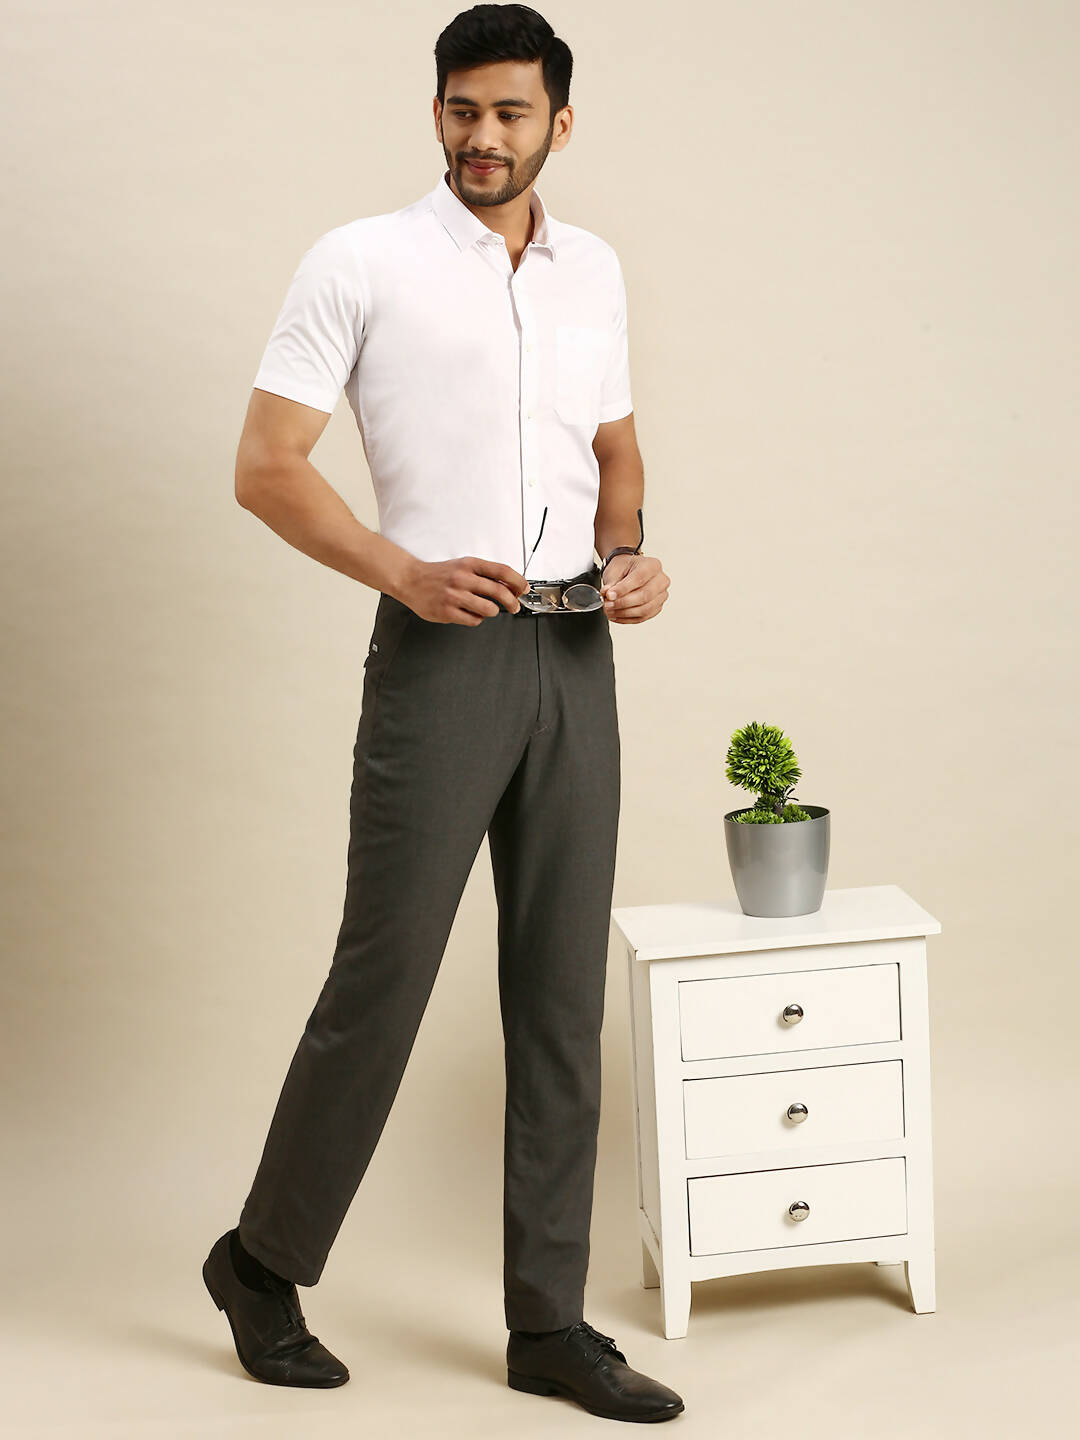 Buy Ramraj Cotton Mens Half Sleeve Royal Cotton White Shirt Online at Best  Price